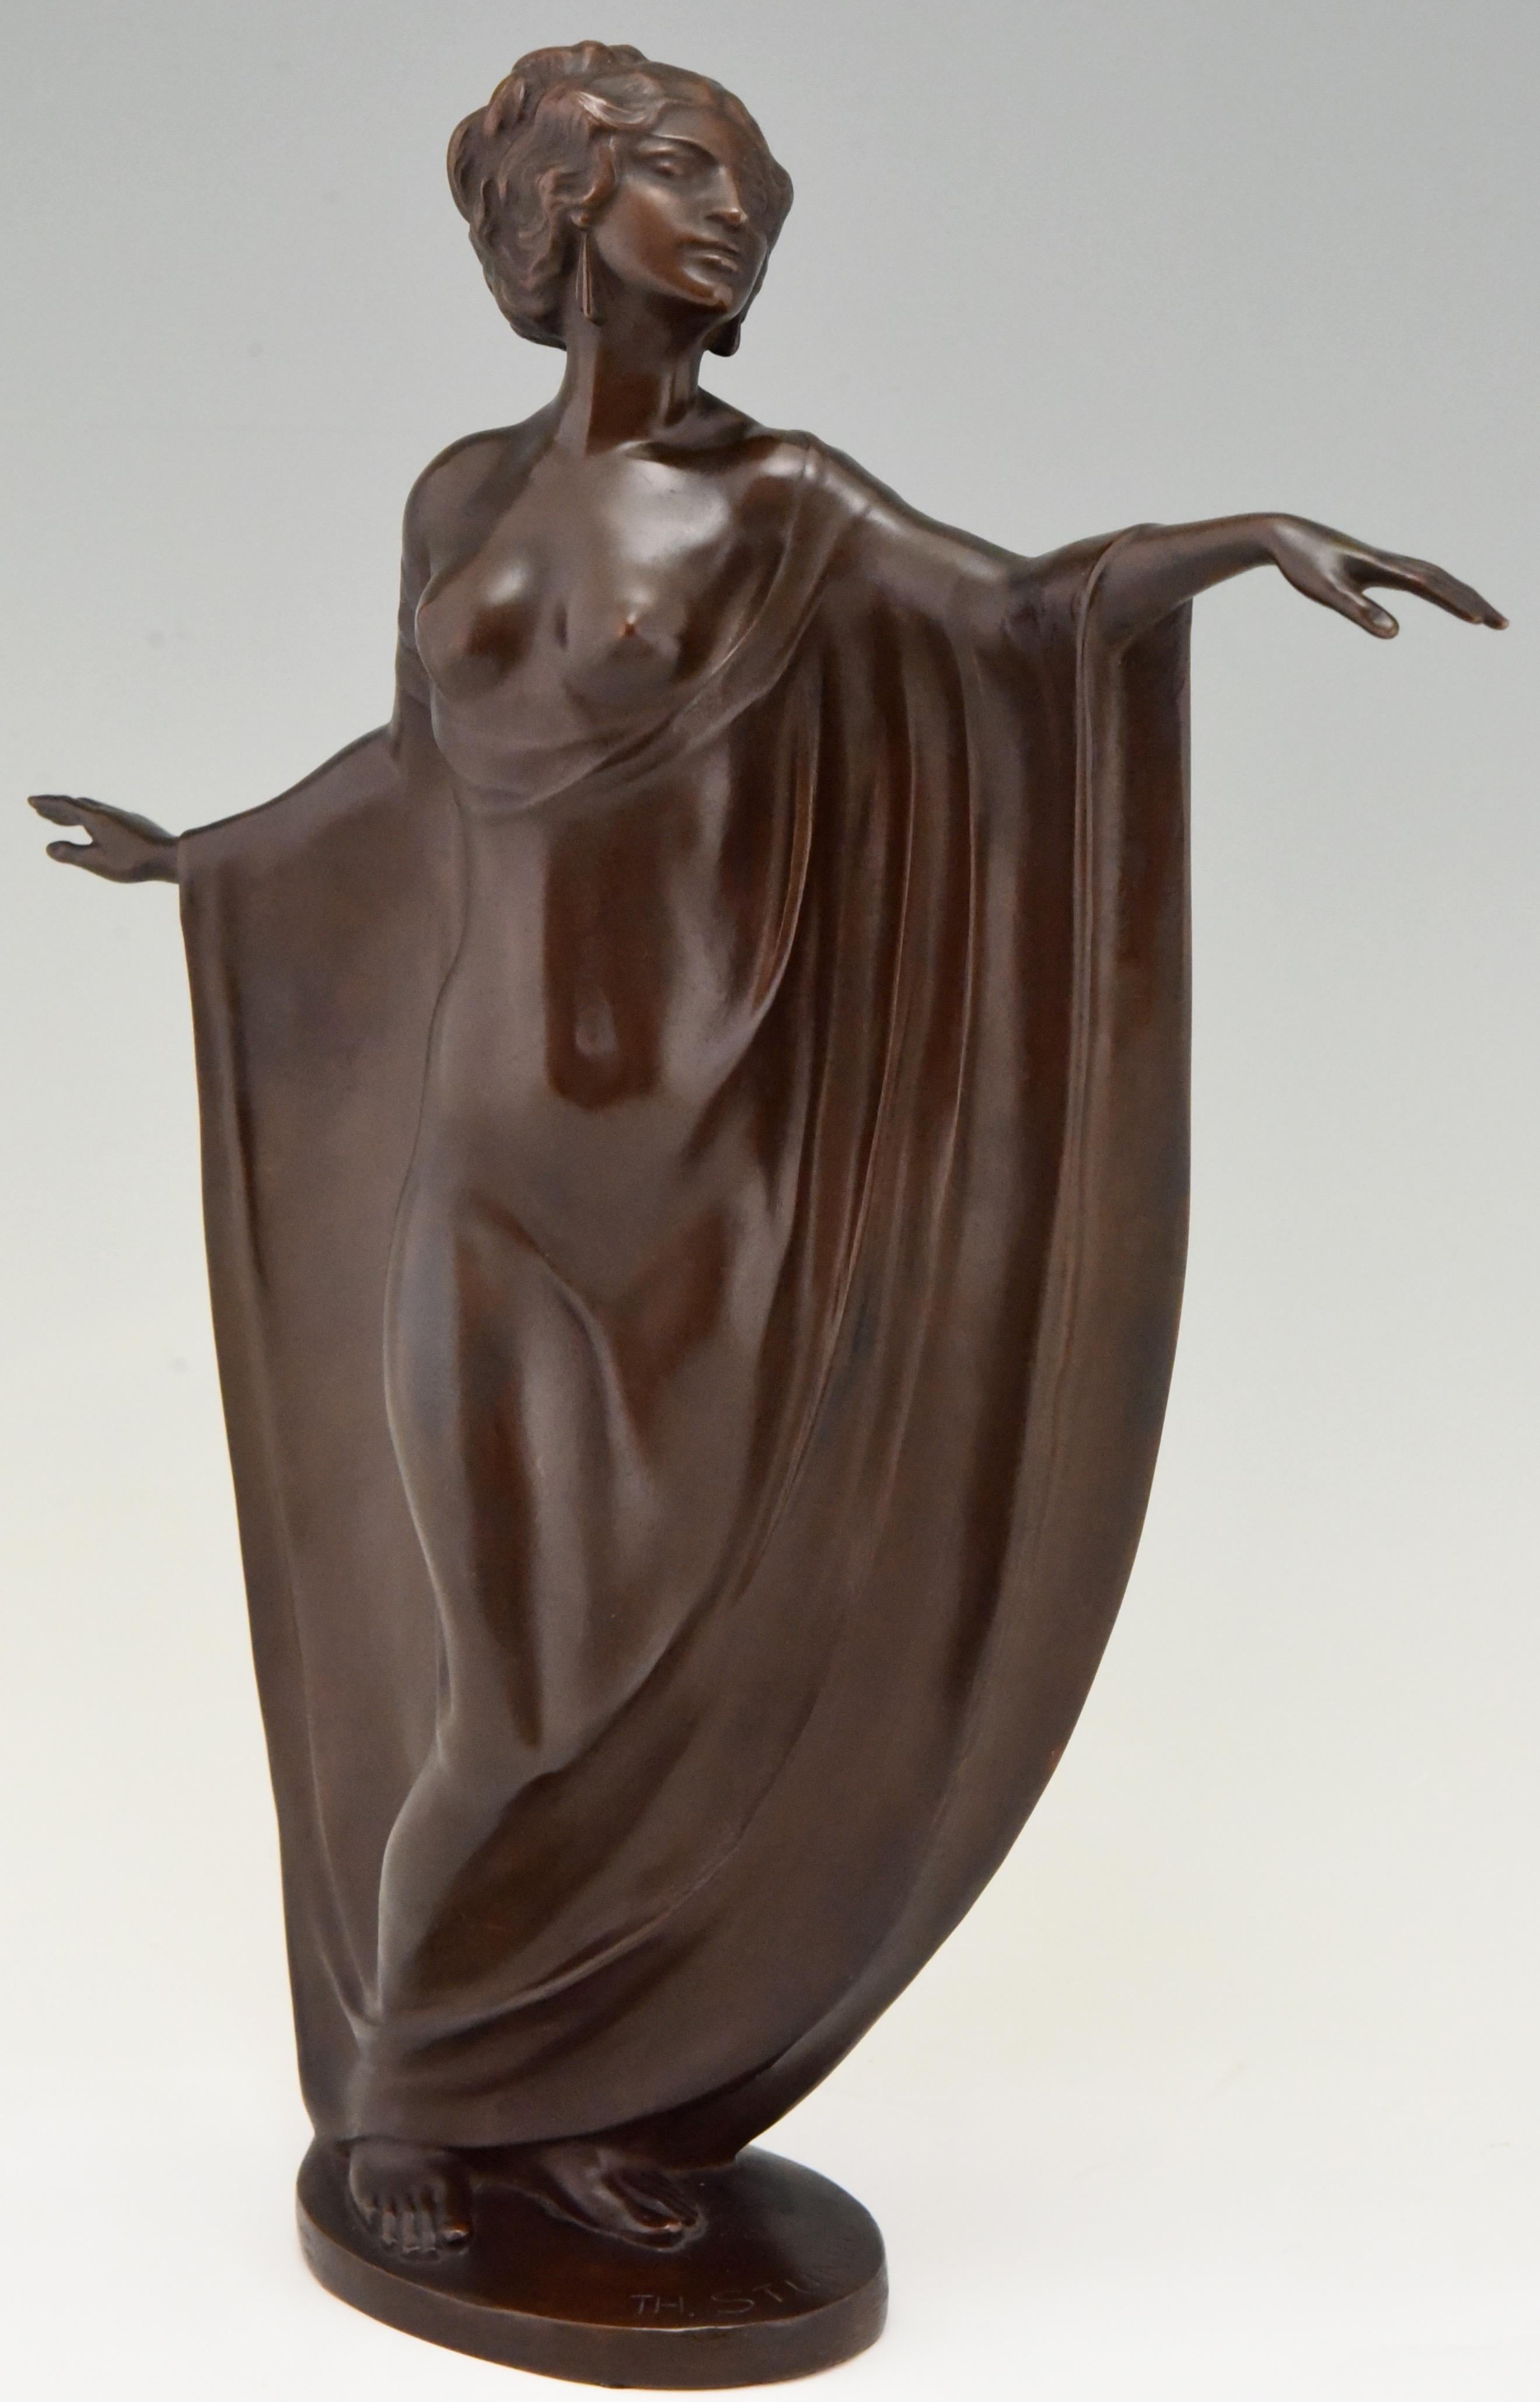 Elegante Jugendstil-Bronzeskulptur einer drapierten halbnackten Tänzerin, signiert von Theodor Stundl, Österreich, 1875-1934
Mit Gießereiprüfzeichen.
Die Bronze hat eine schöne, satte braune Patina und steht auf einem ovalen Bronzesockel.